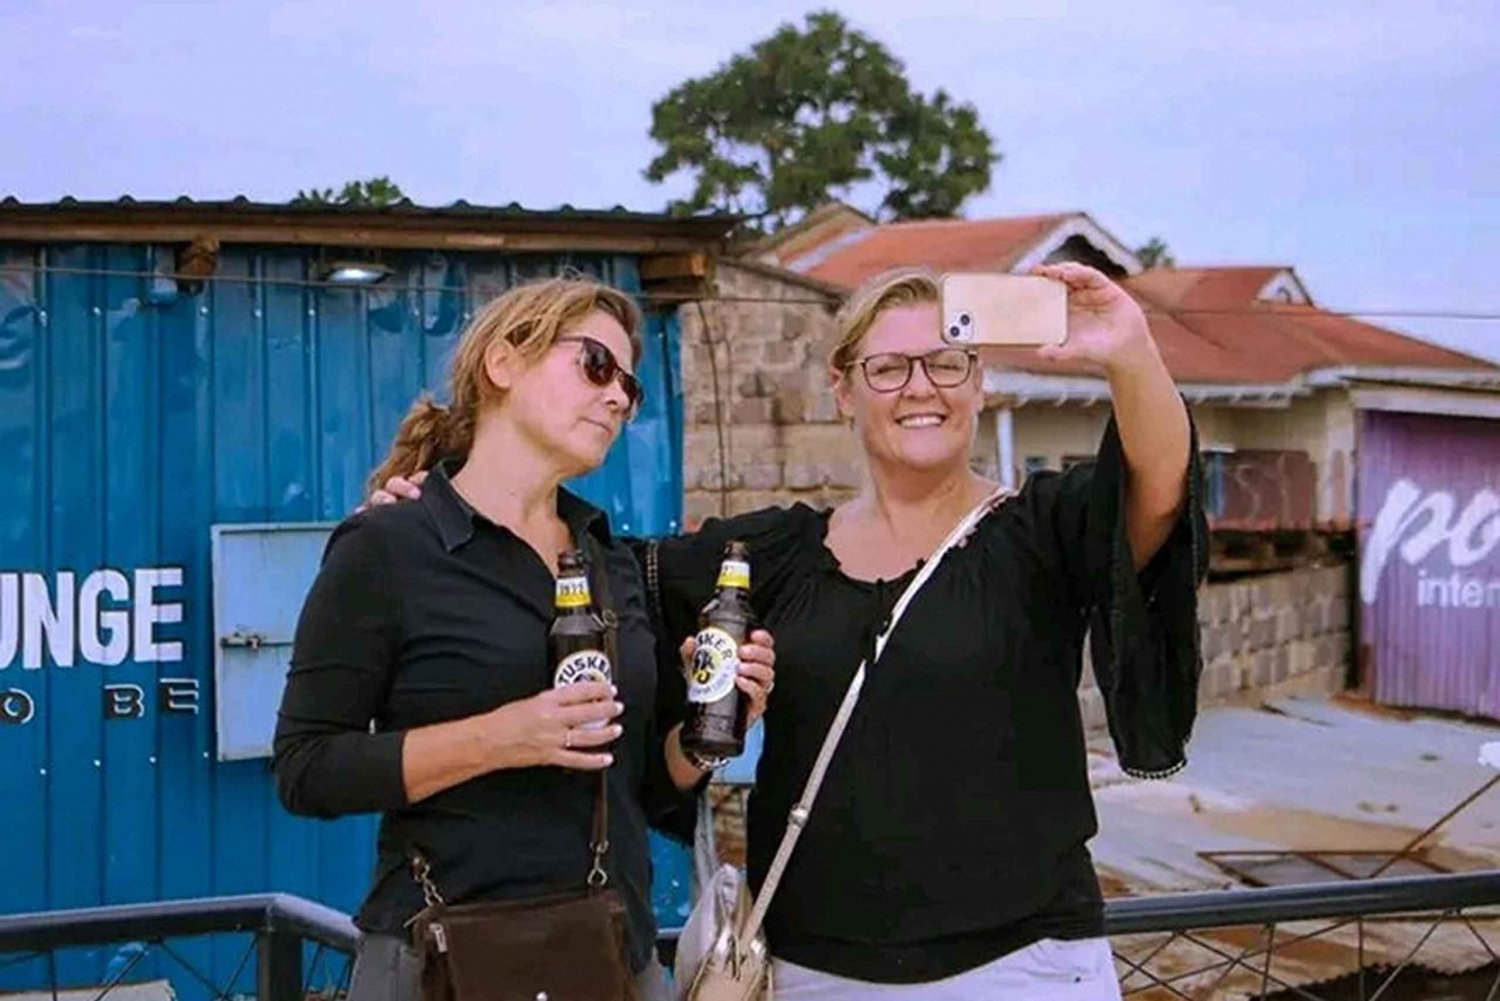 Tour guidato di un giorno della baraccopoli di Kibera in Kenya con trasferimento.